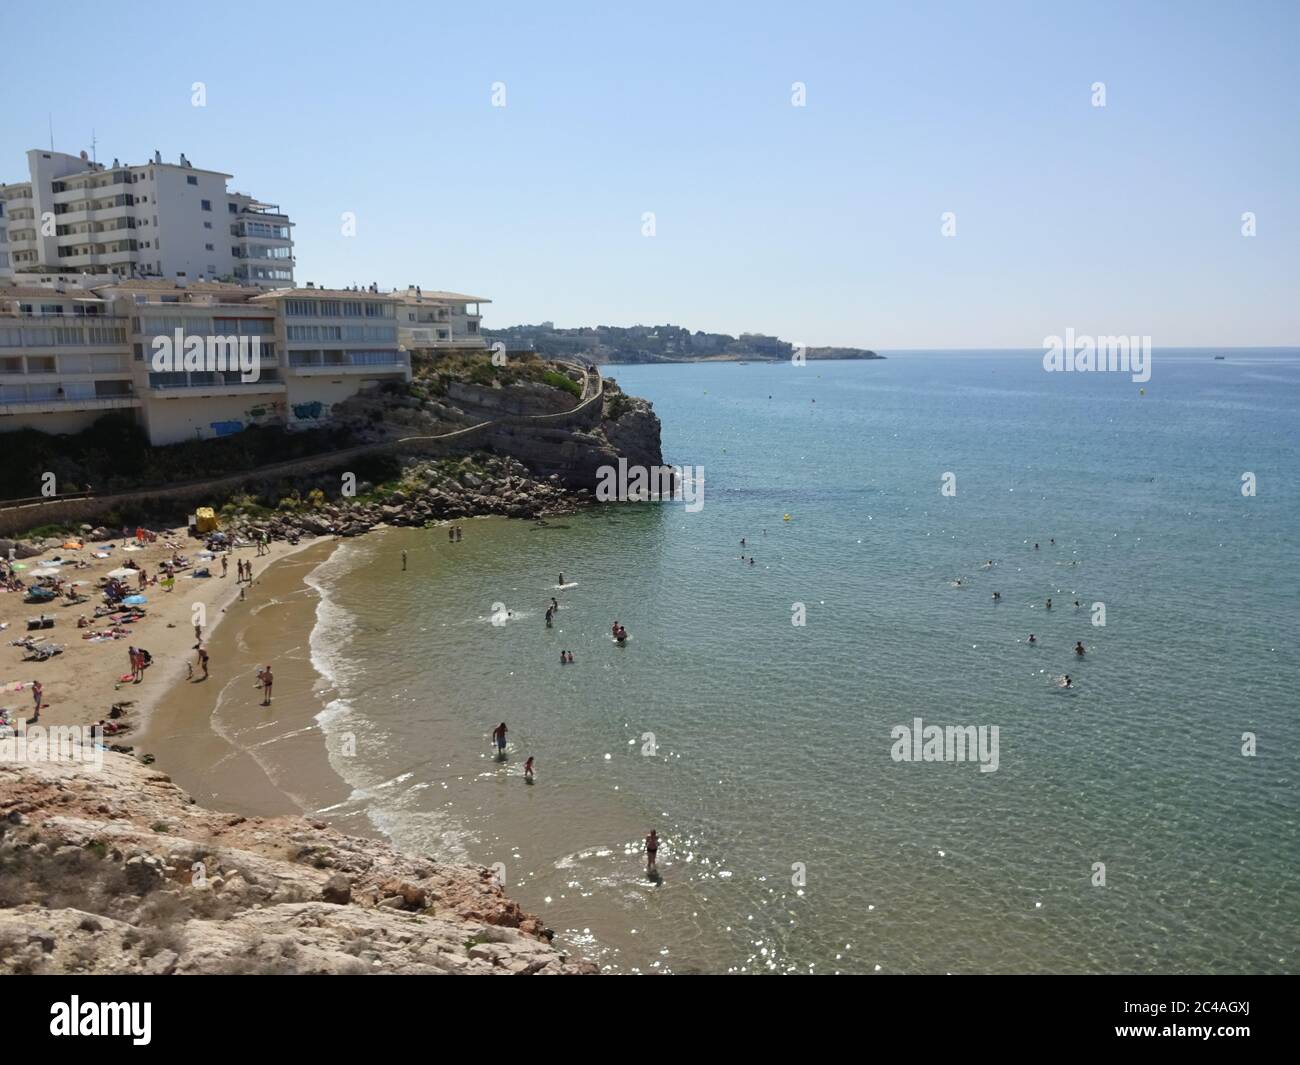 Salou est une ville très fraîche sur la côte de la Costa Dorada en Espagne. Il y a de belles plages, une belle fontaine et une nature merveilleuse Banque D'Images